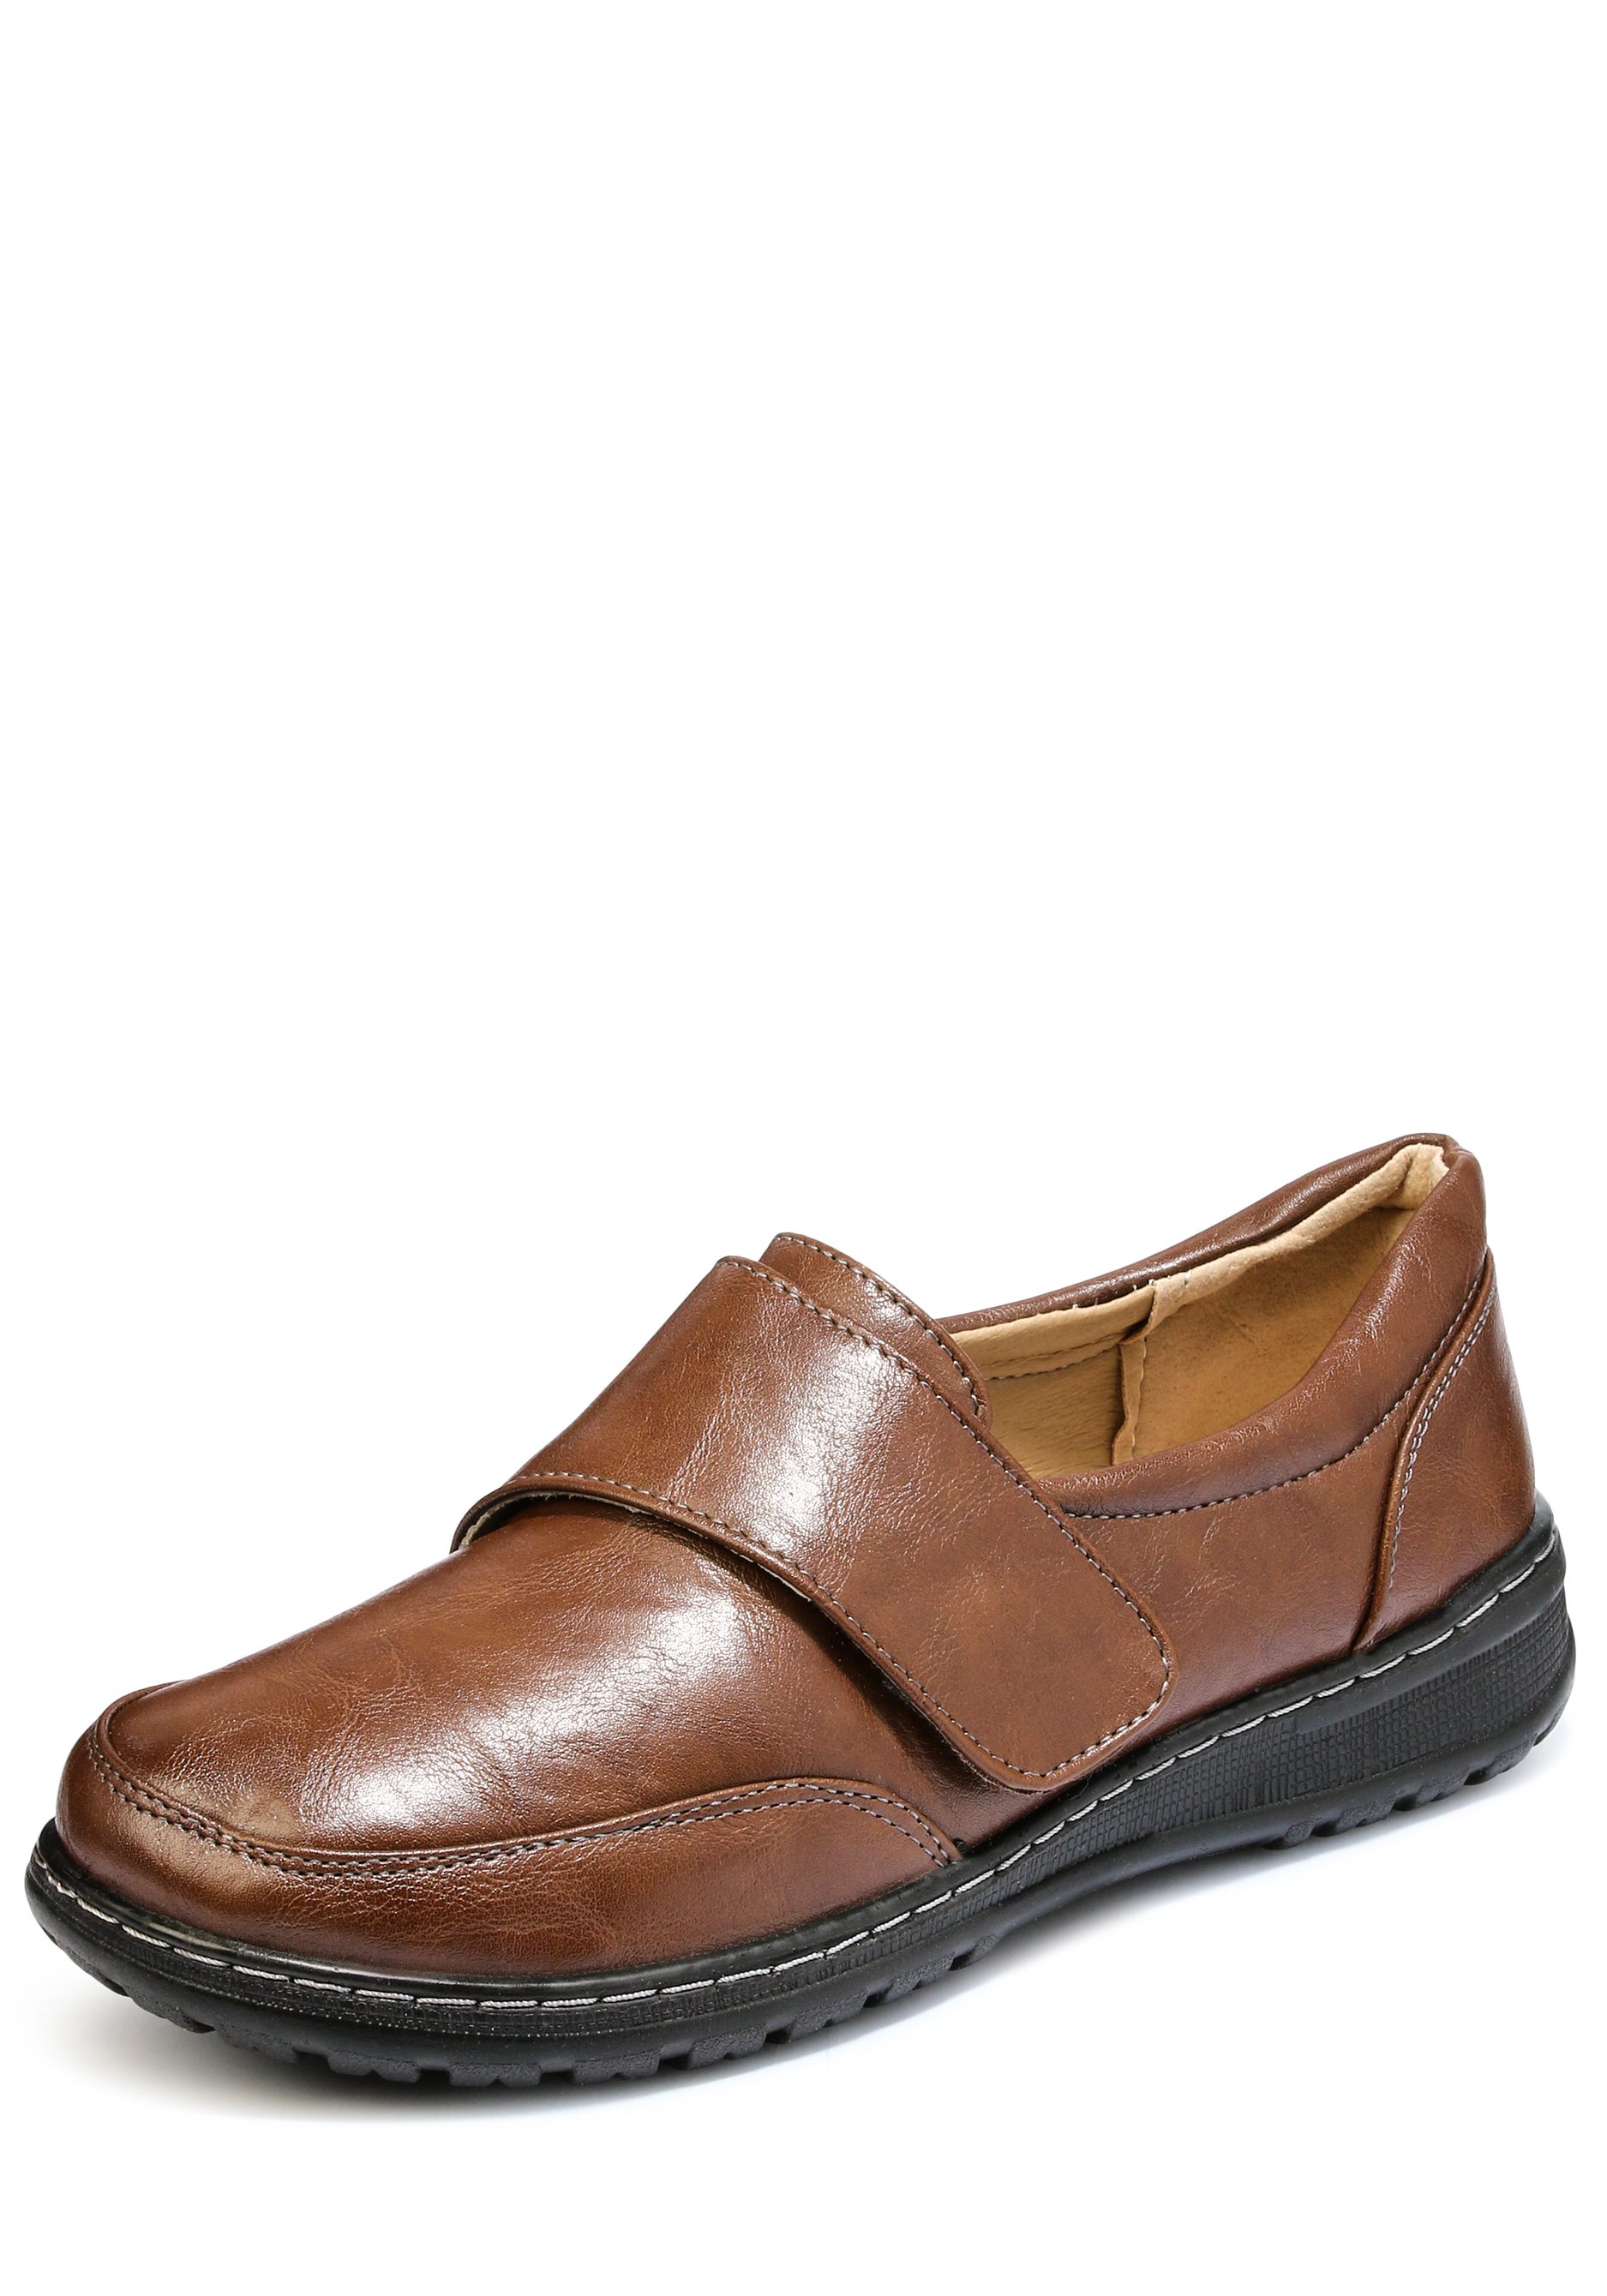 Туфли женские "Фаина", цвет коричневый, размер 37